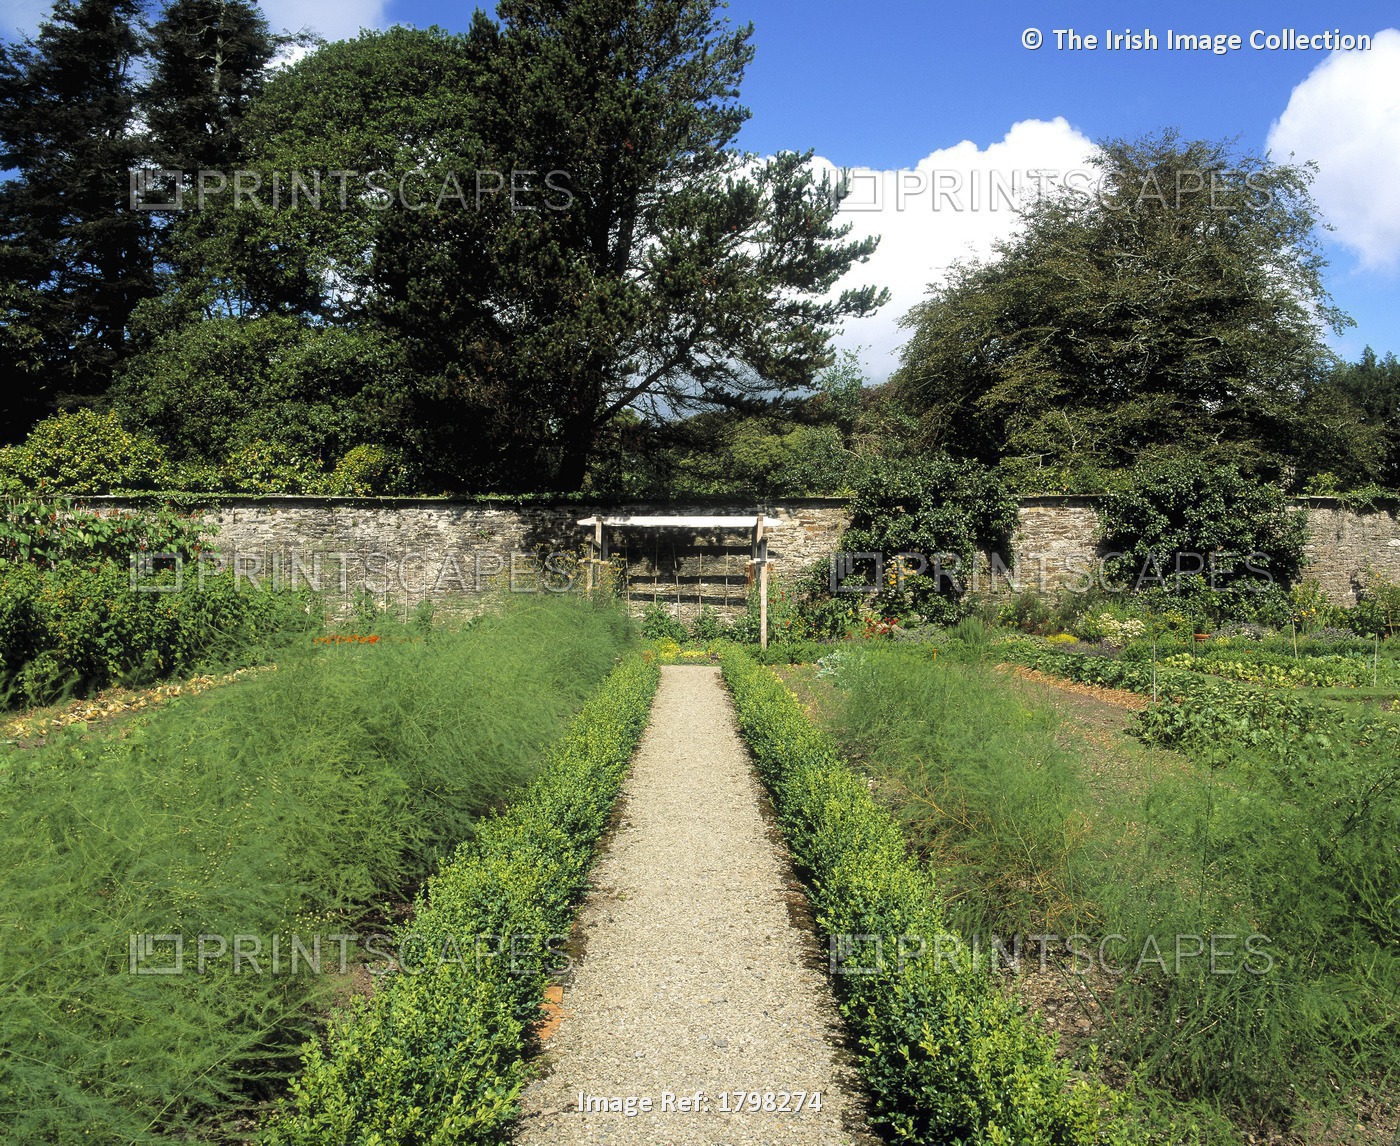 Creagh Gardens, Skibbereen, Co Cork; Asparagus Growing In The Walled Garden